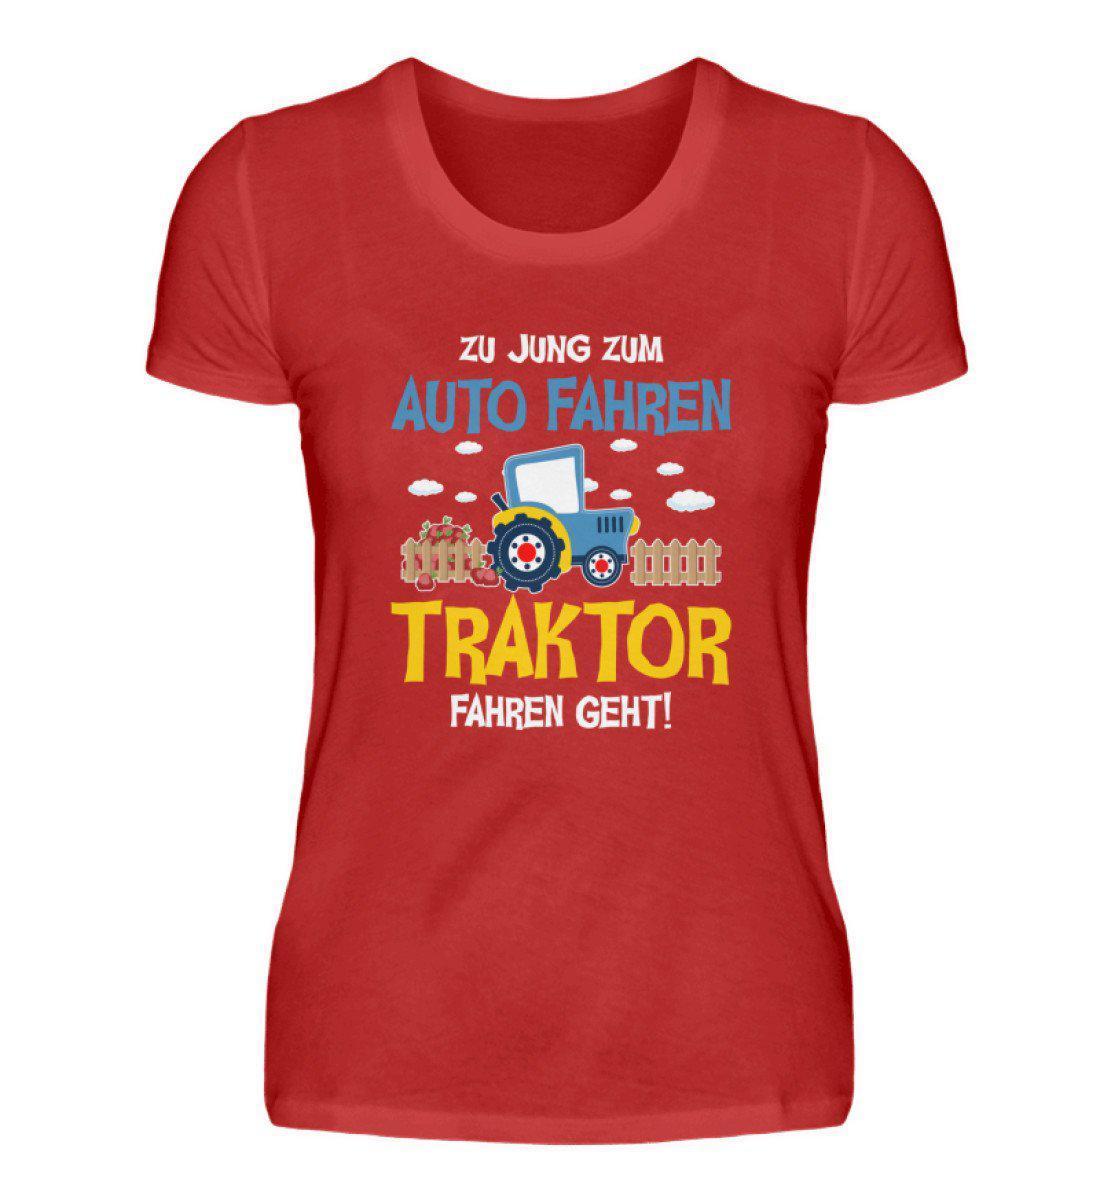 Traktor fahren geht · Damen T-Shirt-Damen Basic T-Shirt-Red-S-Agrarstarz